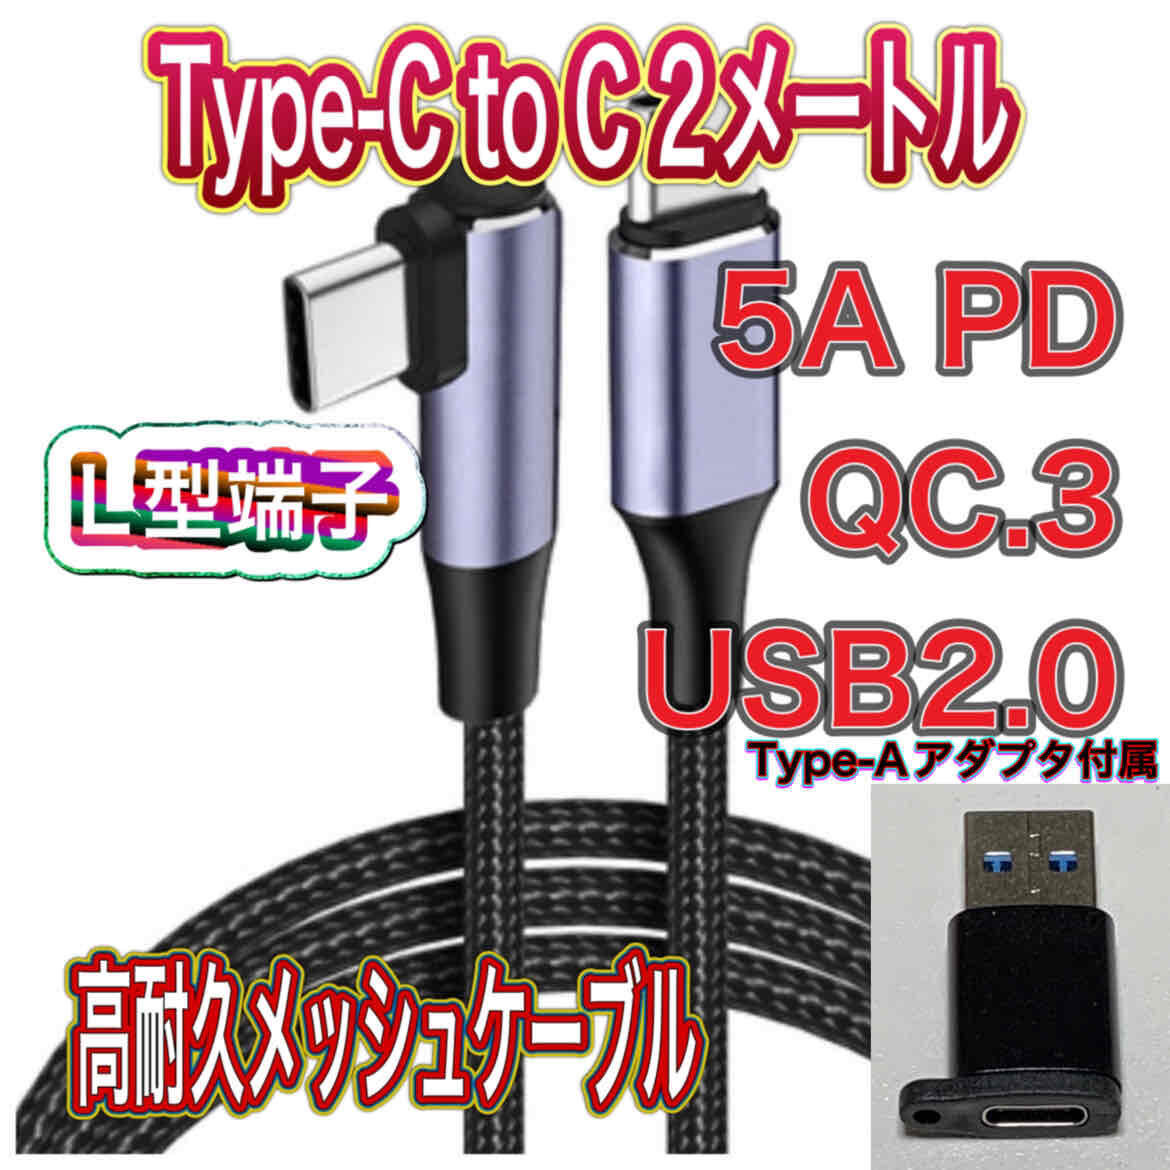 新品 Type-C to C 2メートル 100W5A PDケーブル QC.3 使いやすい片側 L型端子 Type-Aアダプタ付き 高耐久メッシュケーブル 送料無料の画像1